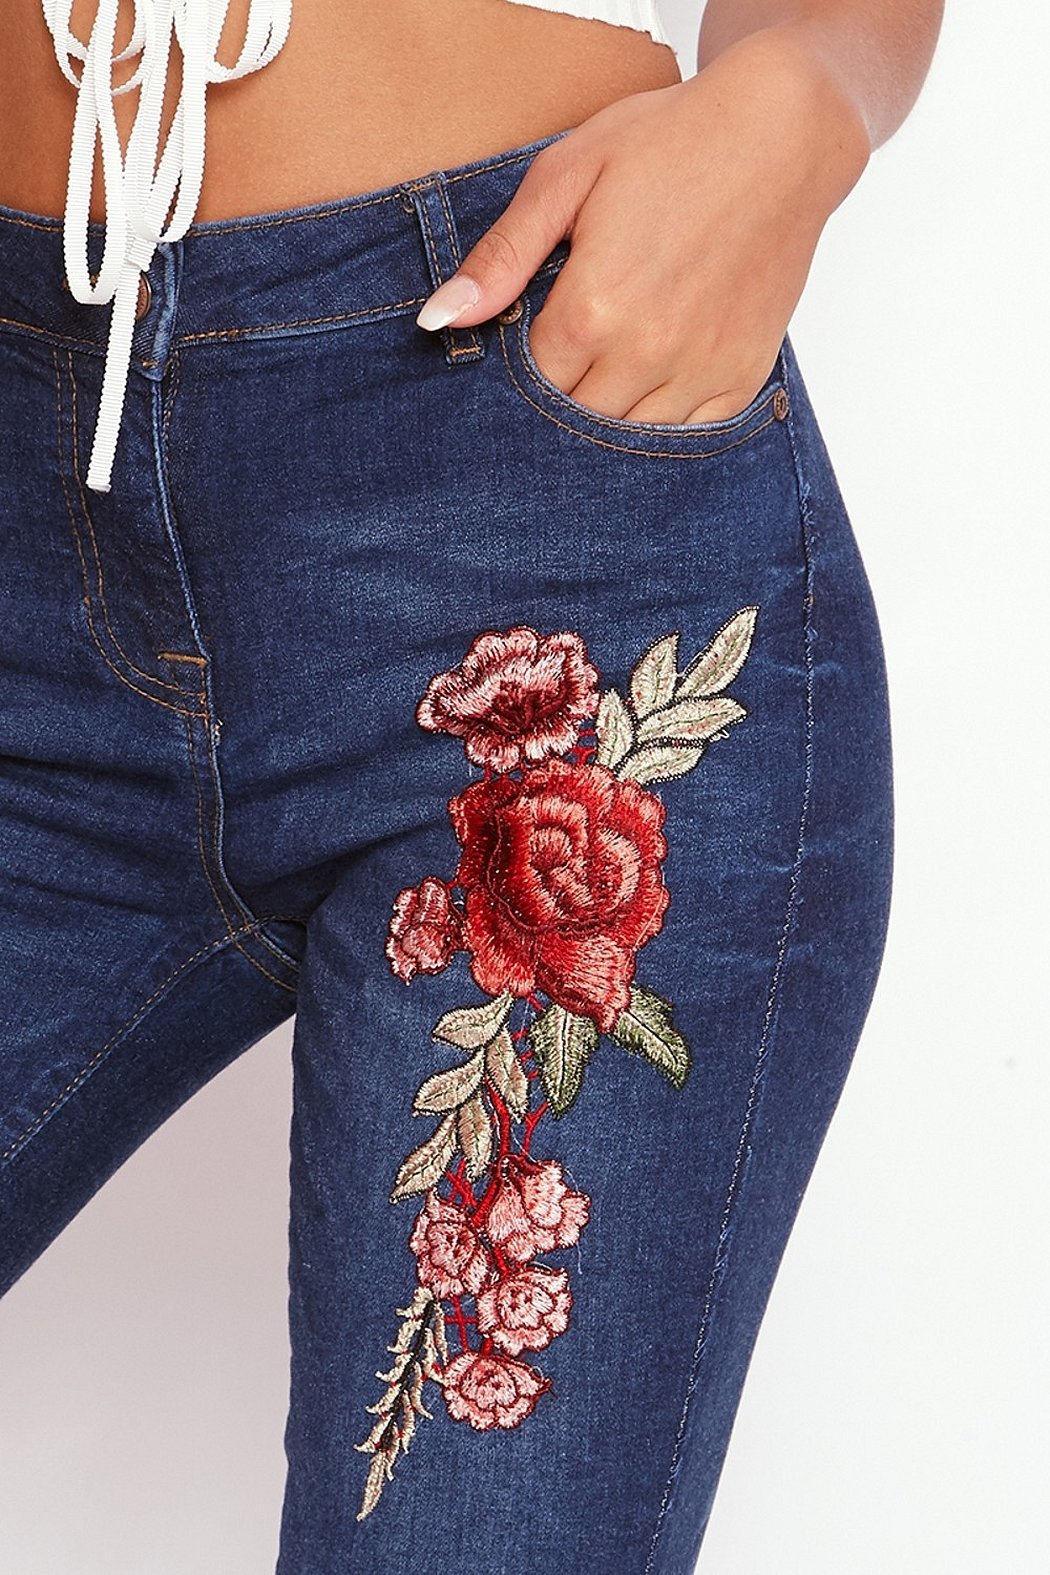 Вышивка на джинсах своими руками схемы